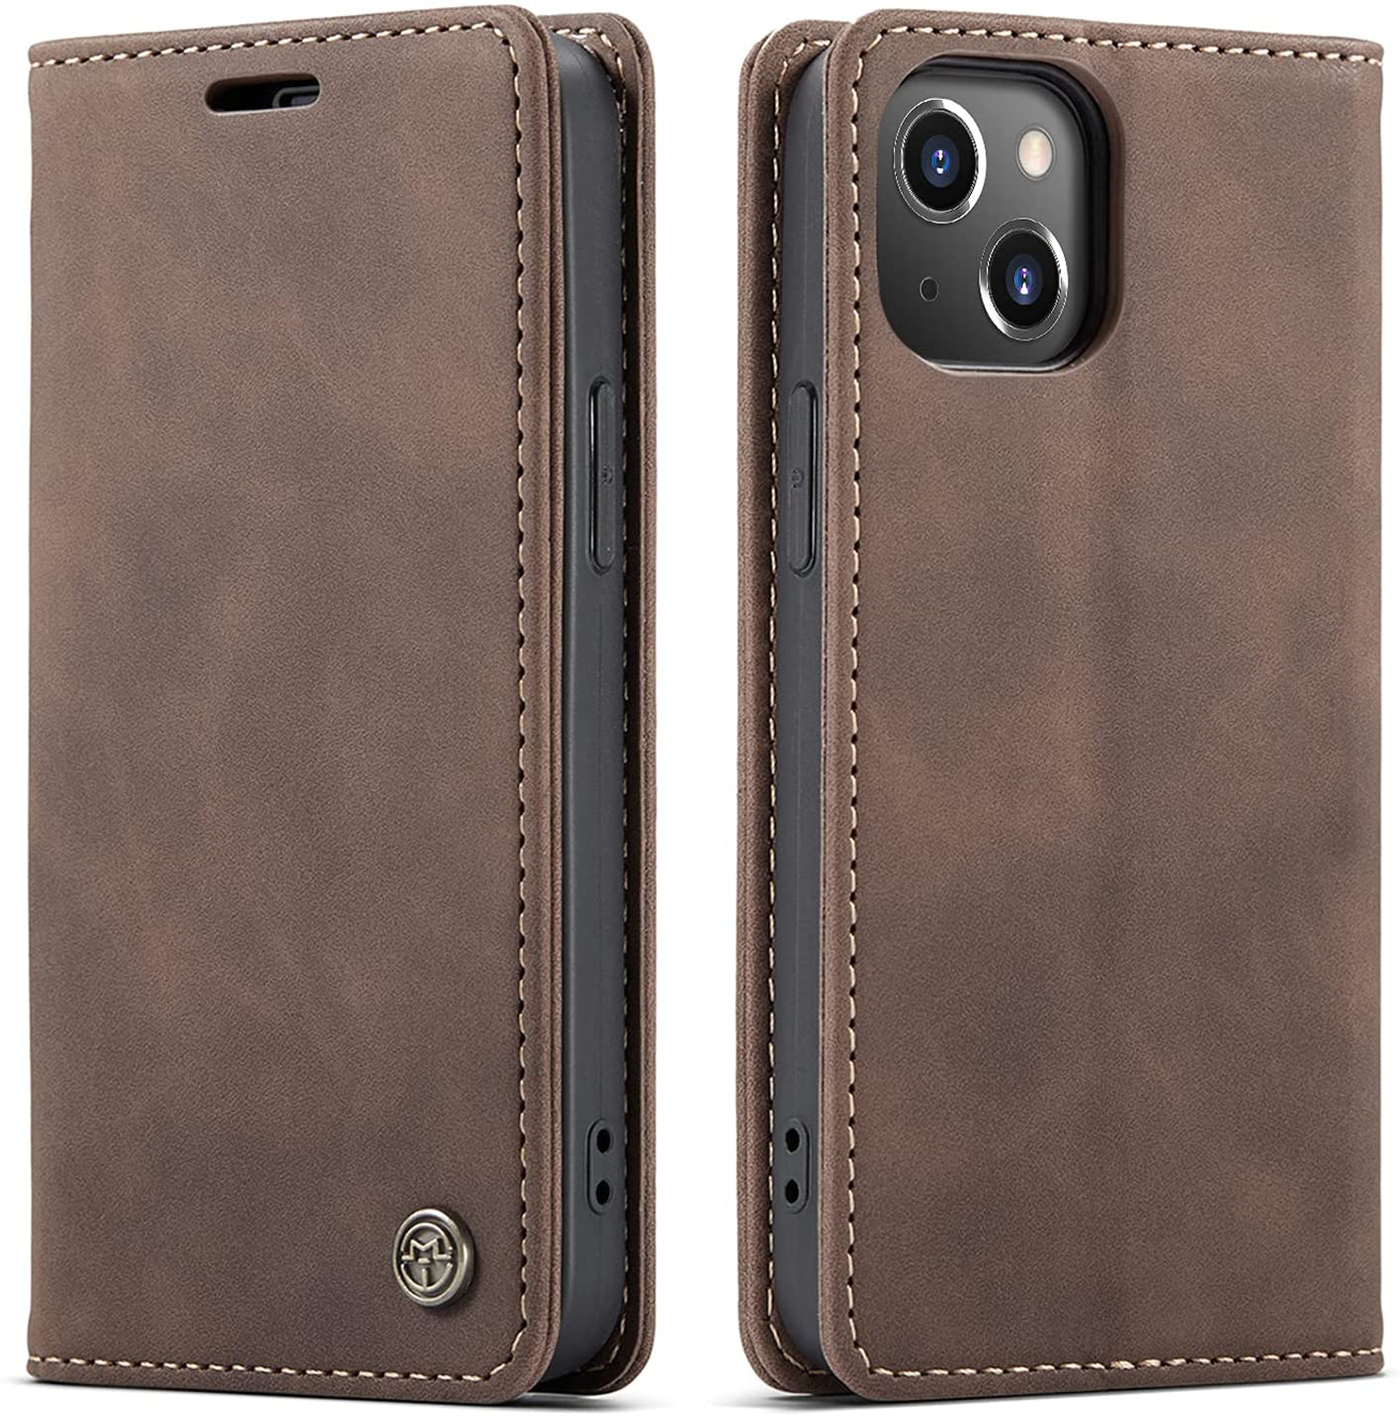 iPhone 13 high quality premium and unique designer leather case cover